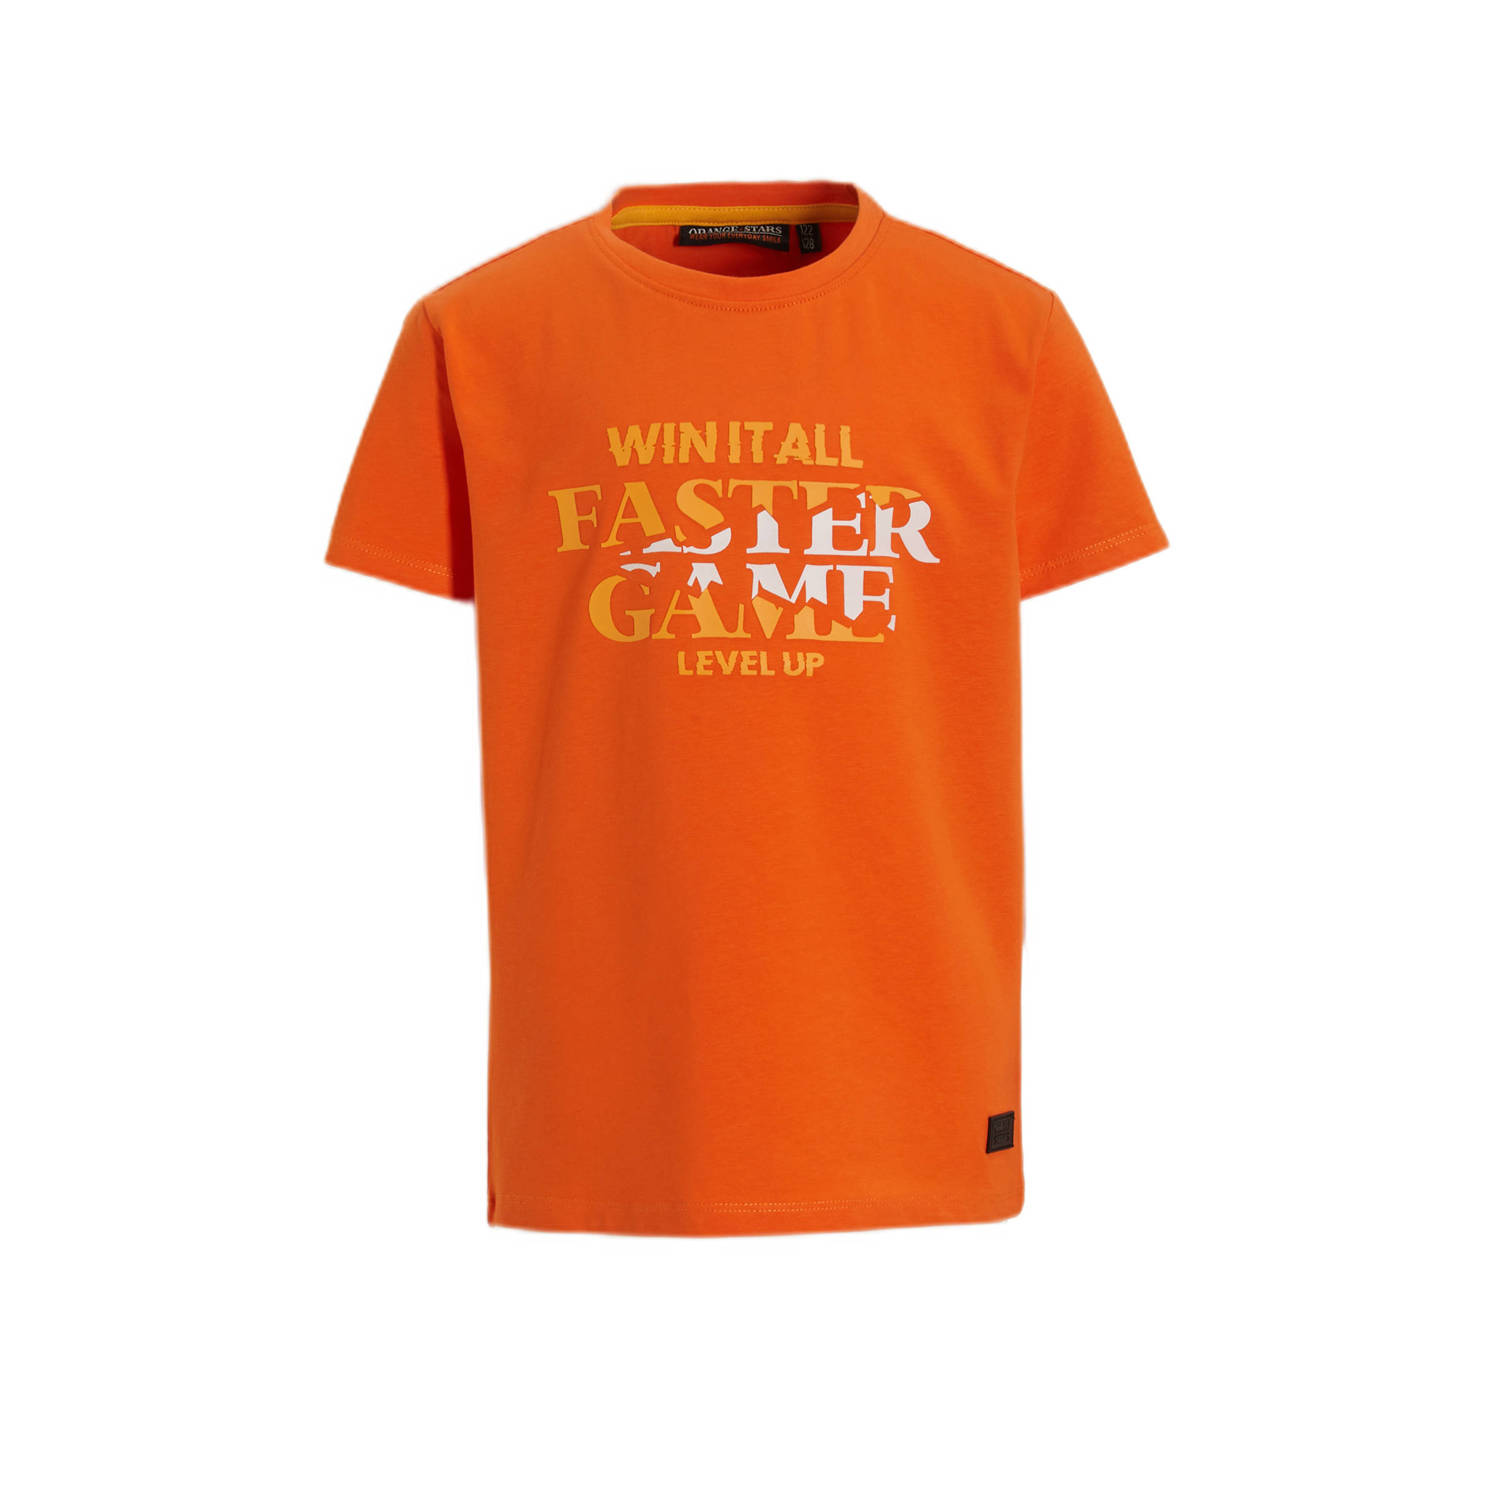 Orange Stars T-shirt Polat met printopdruk oranje